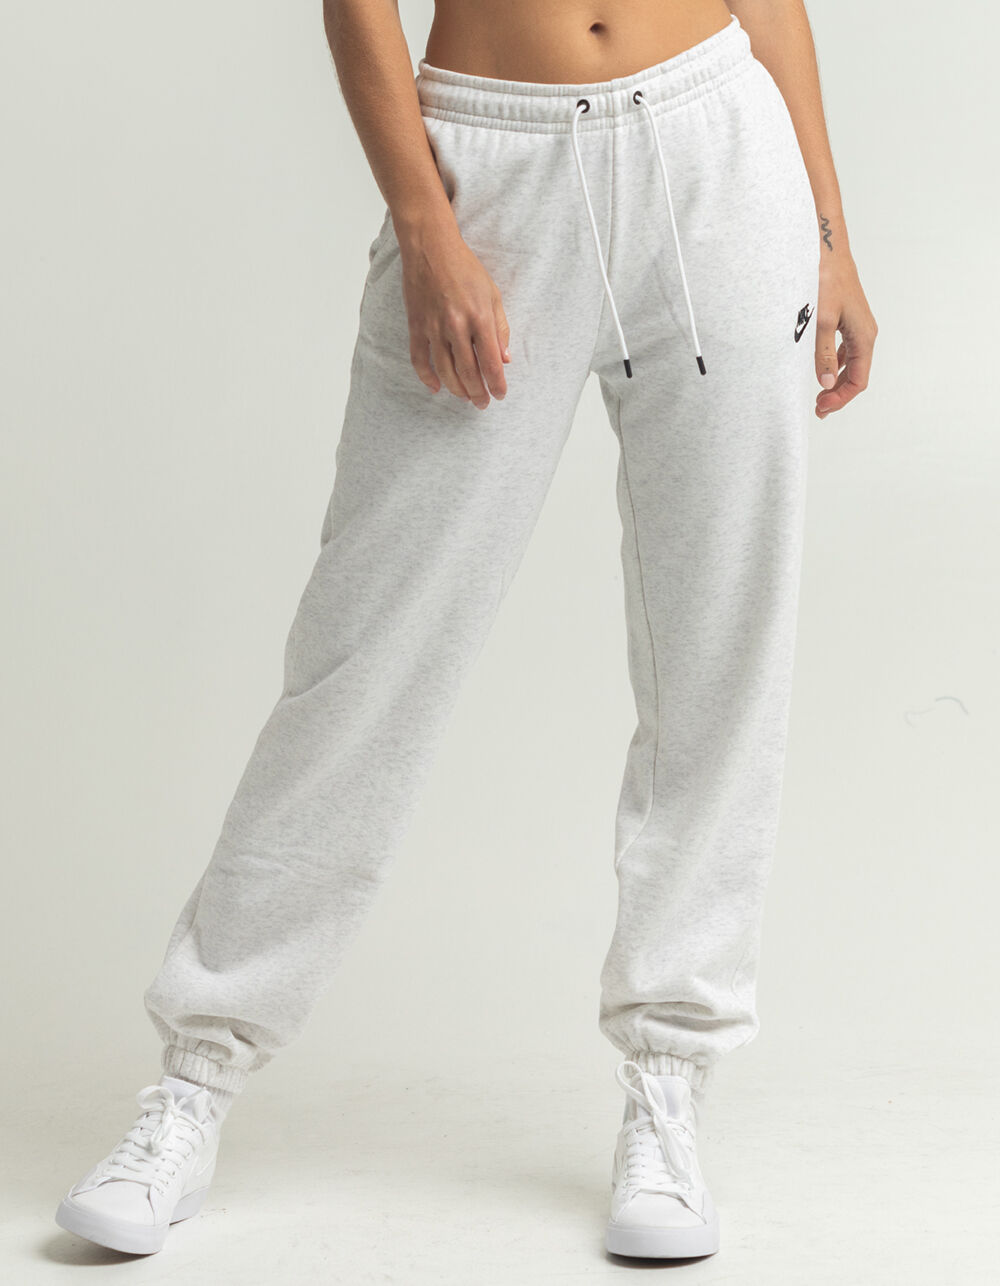 Women Nike Sweatpants - Macy's